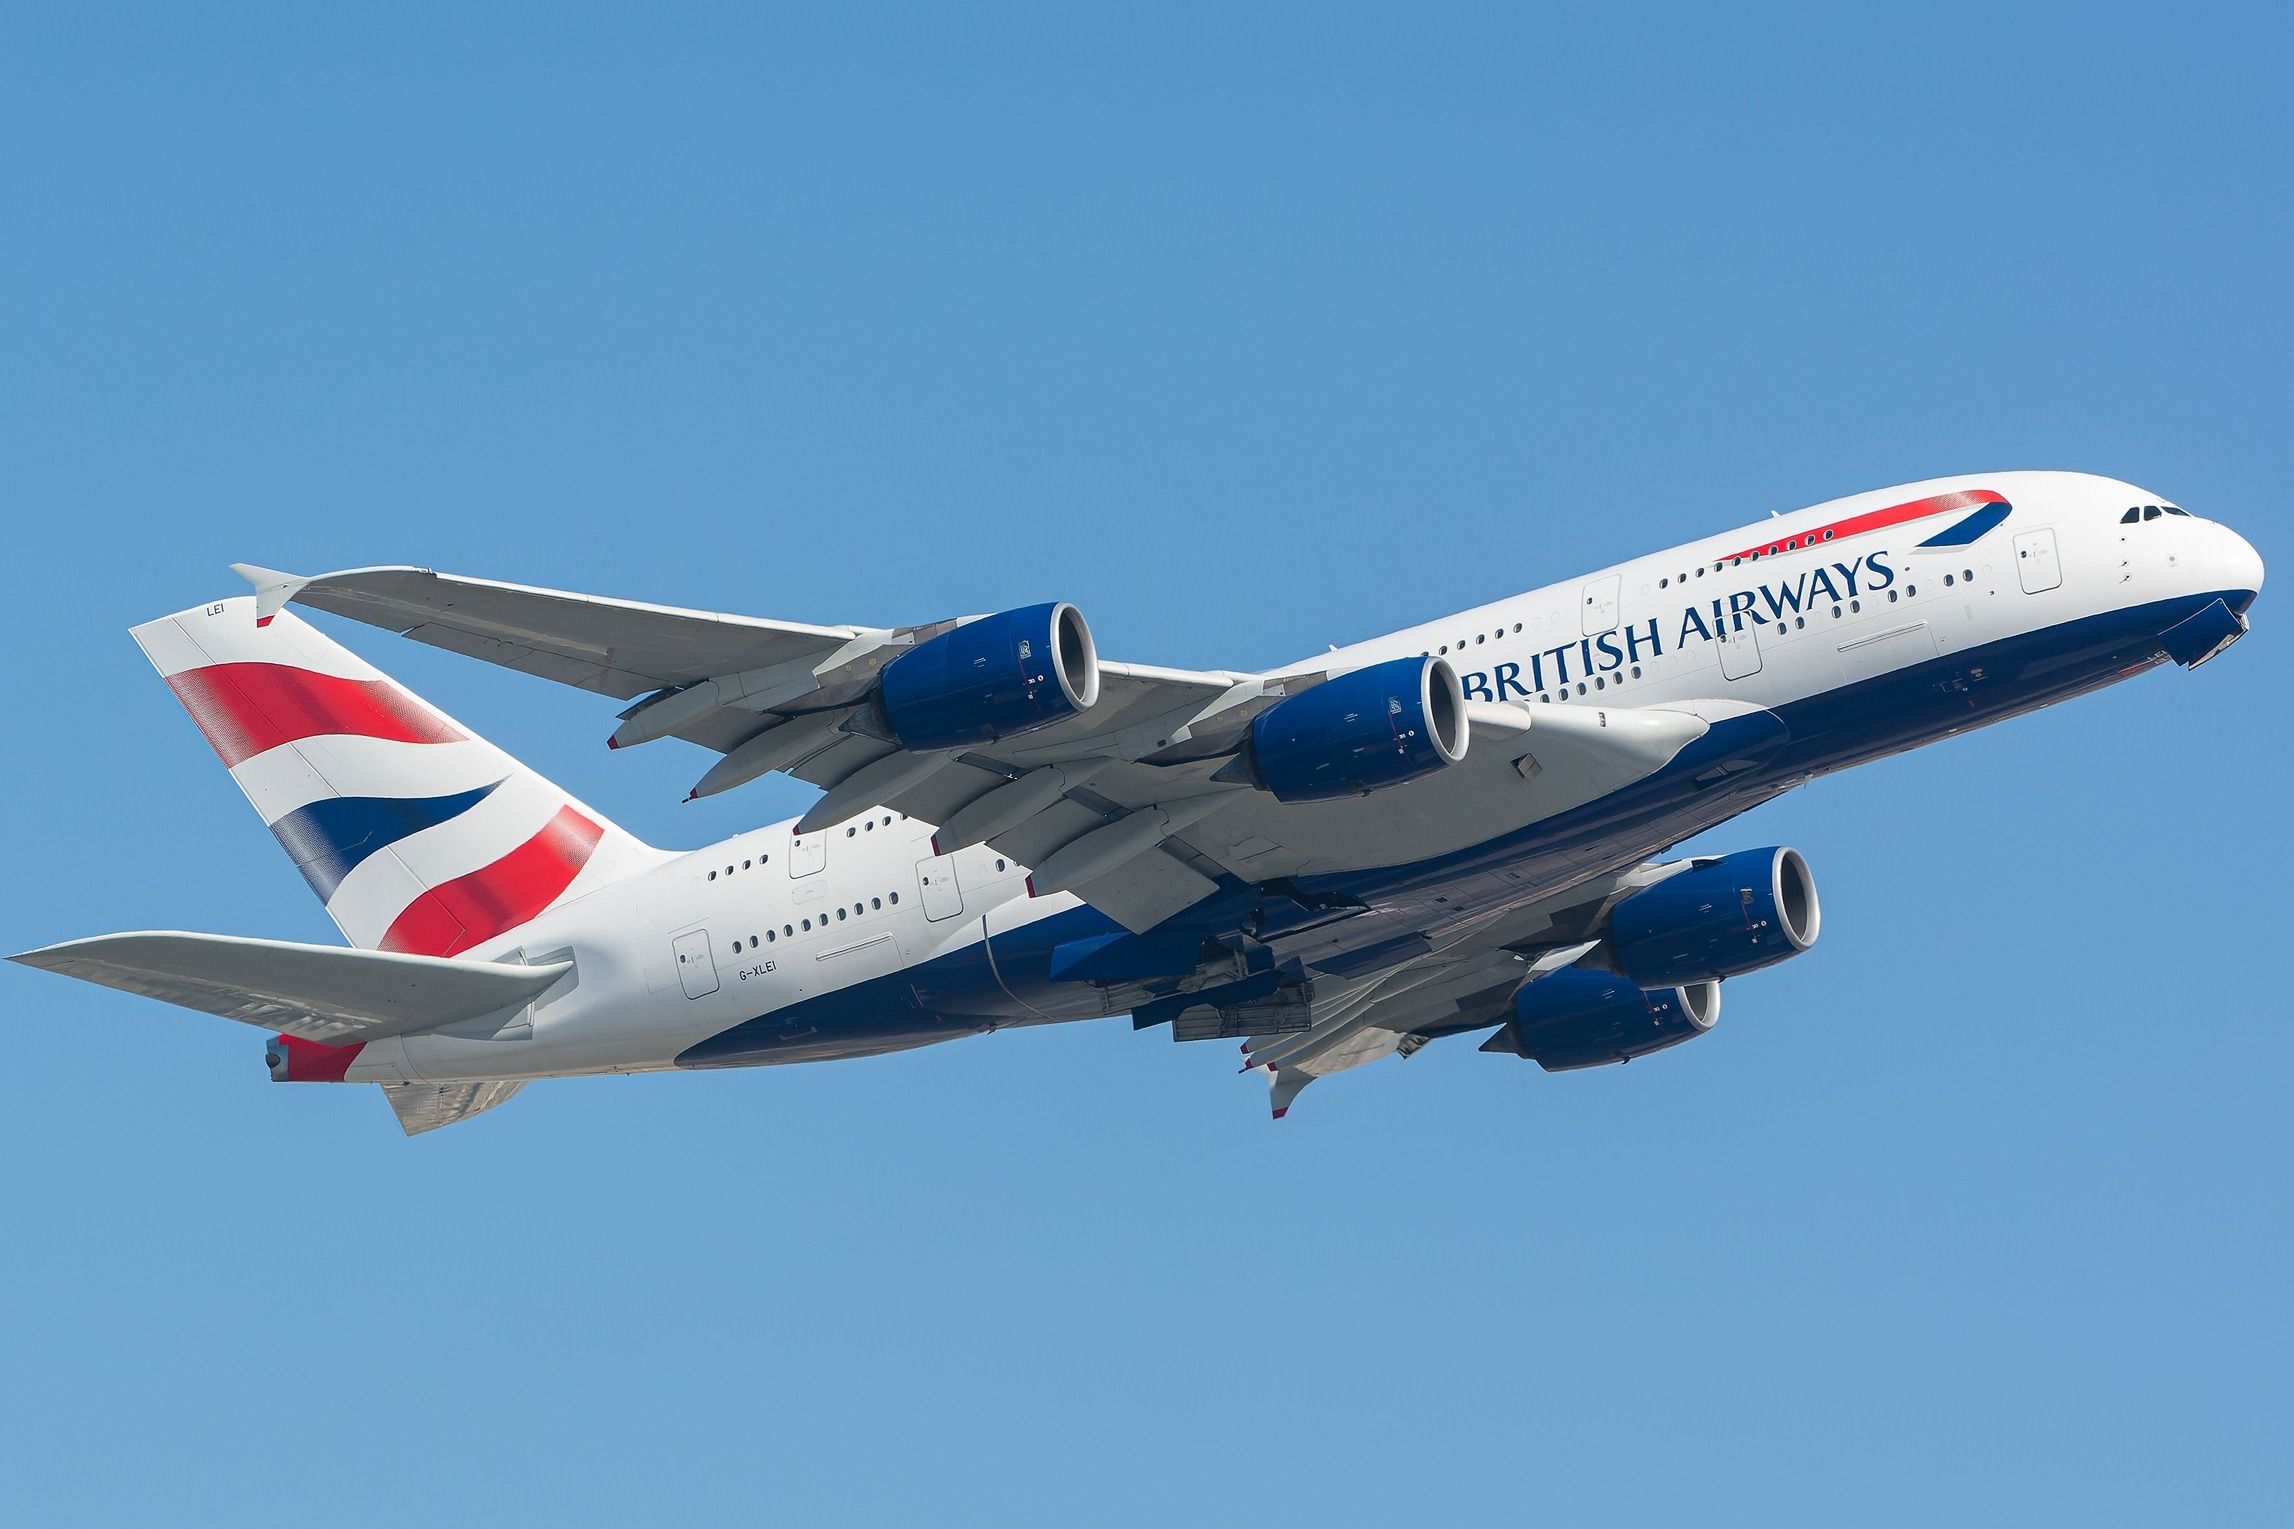 British Airways Airbus A380 departing shutterstock_2367609355